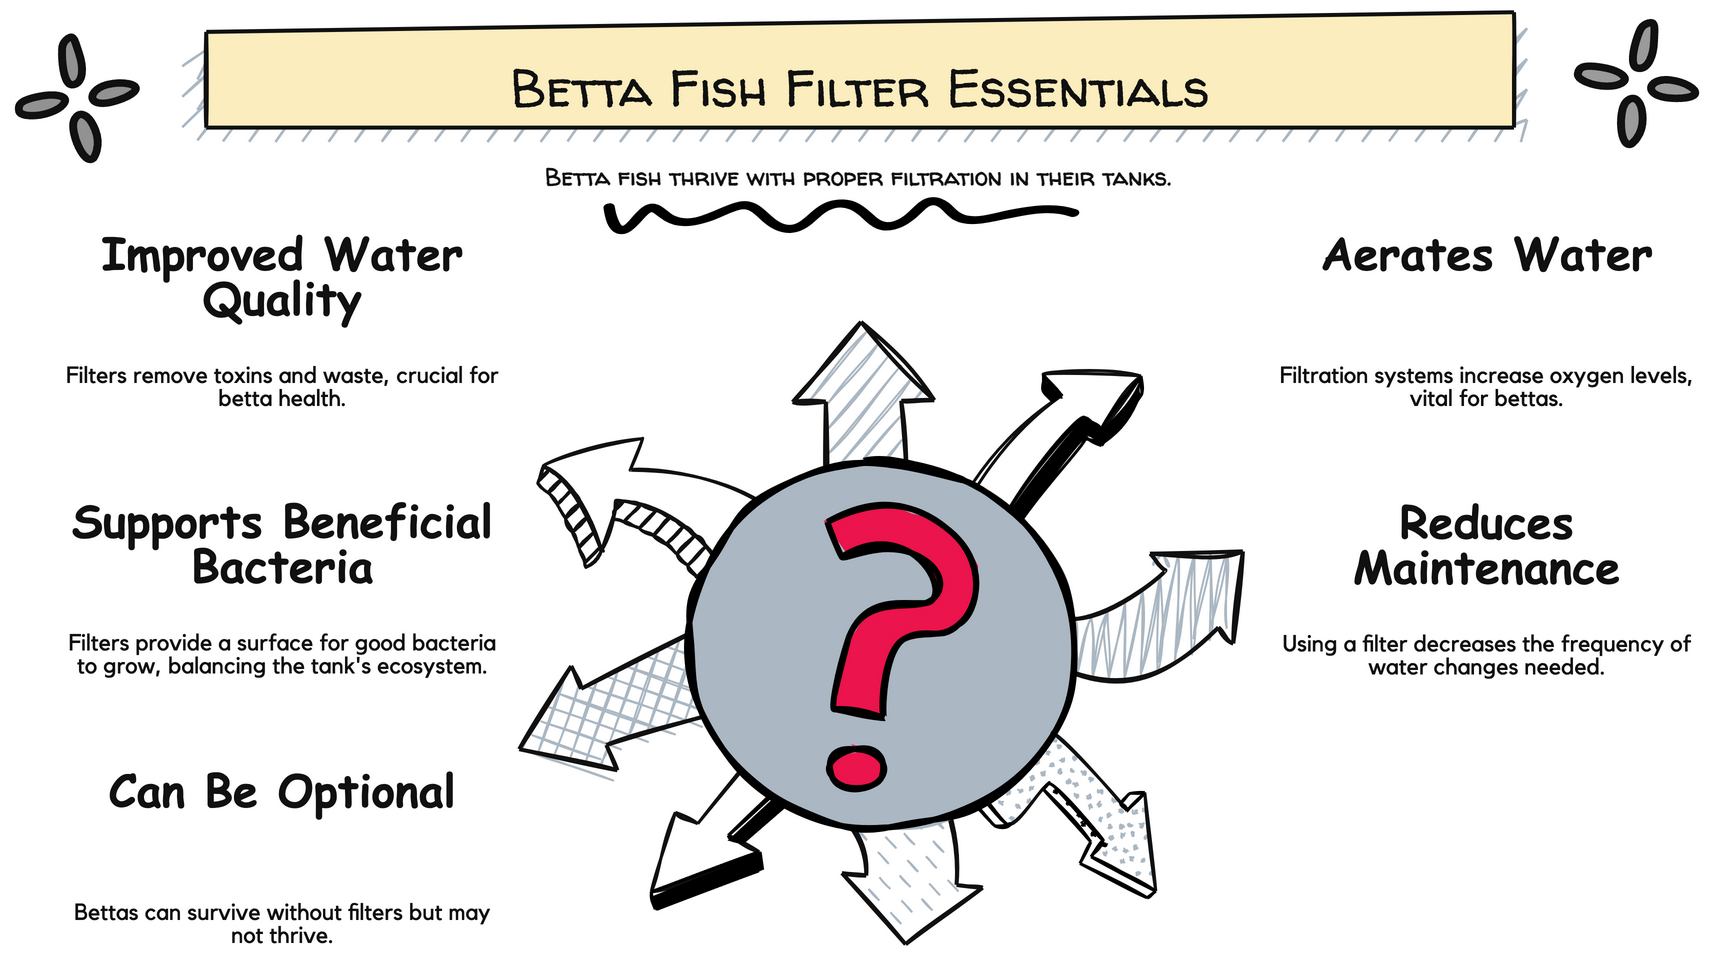 Brauchen Kampffische einen Filter?